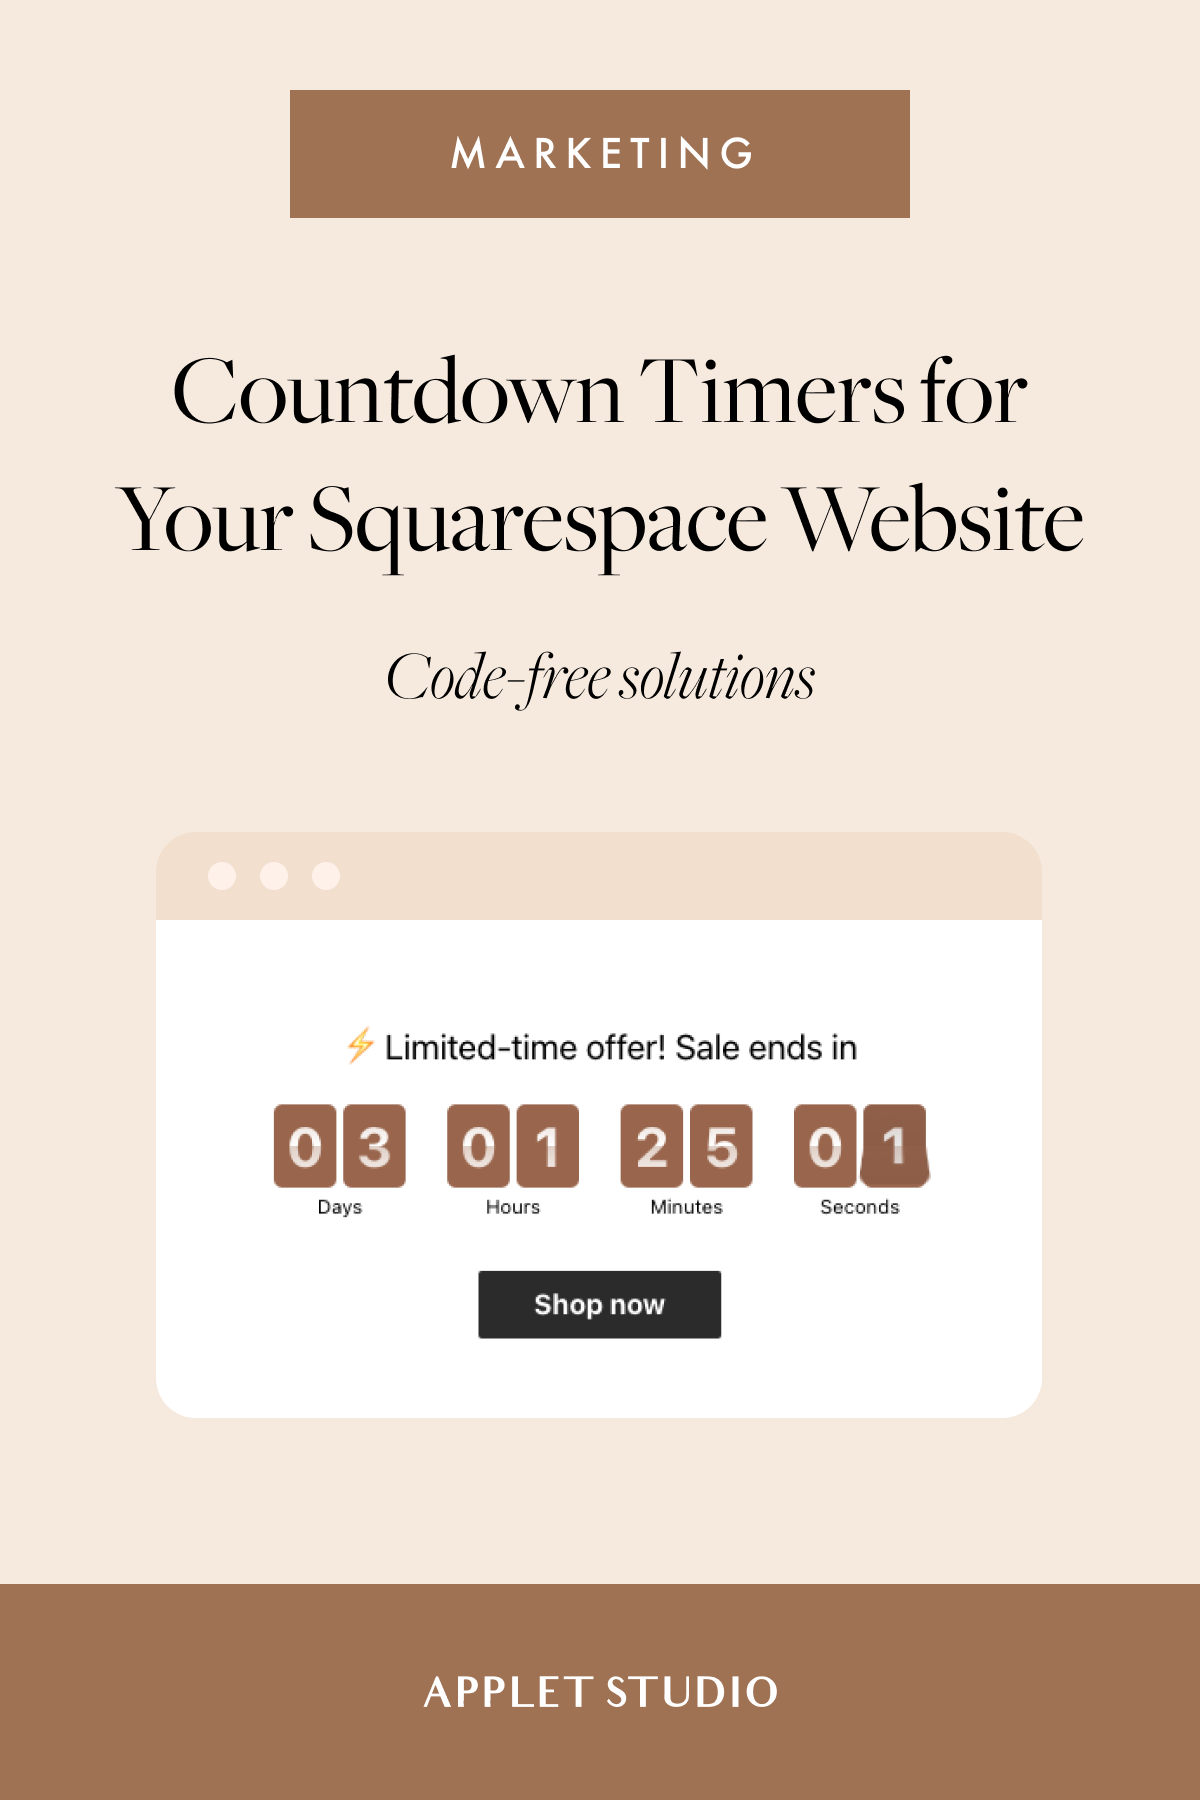 https://images.squarespace-cdn.com/content/v1/5e4becf684e6d079db61533d/1652001824809-WS4IXJMK2GVIRF4QCNIR/squarespace-countdown-timer.png